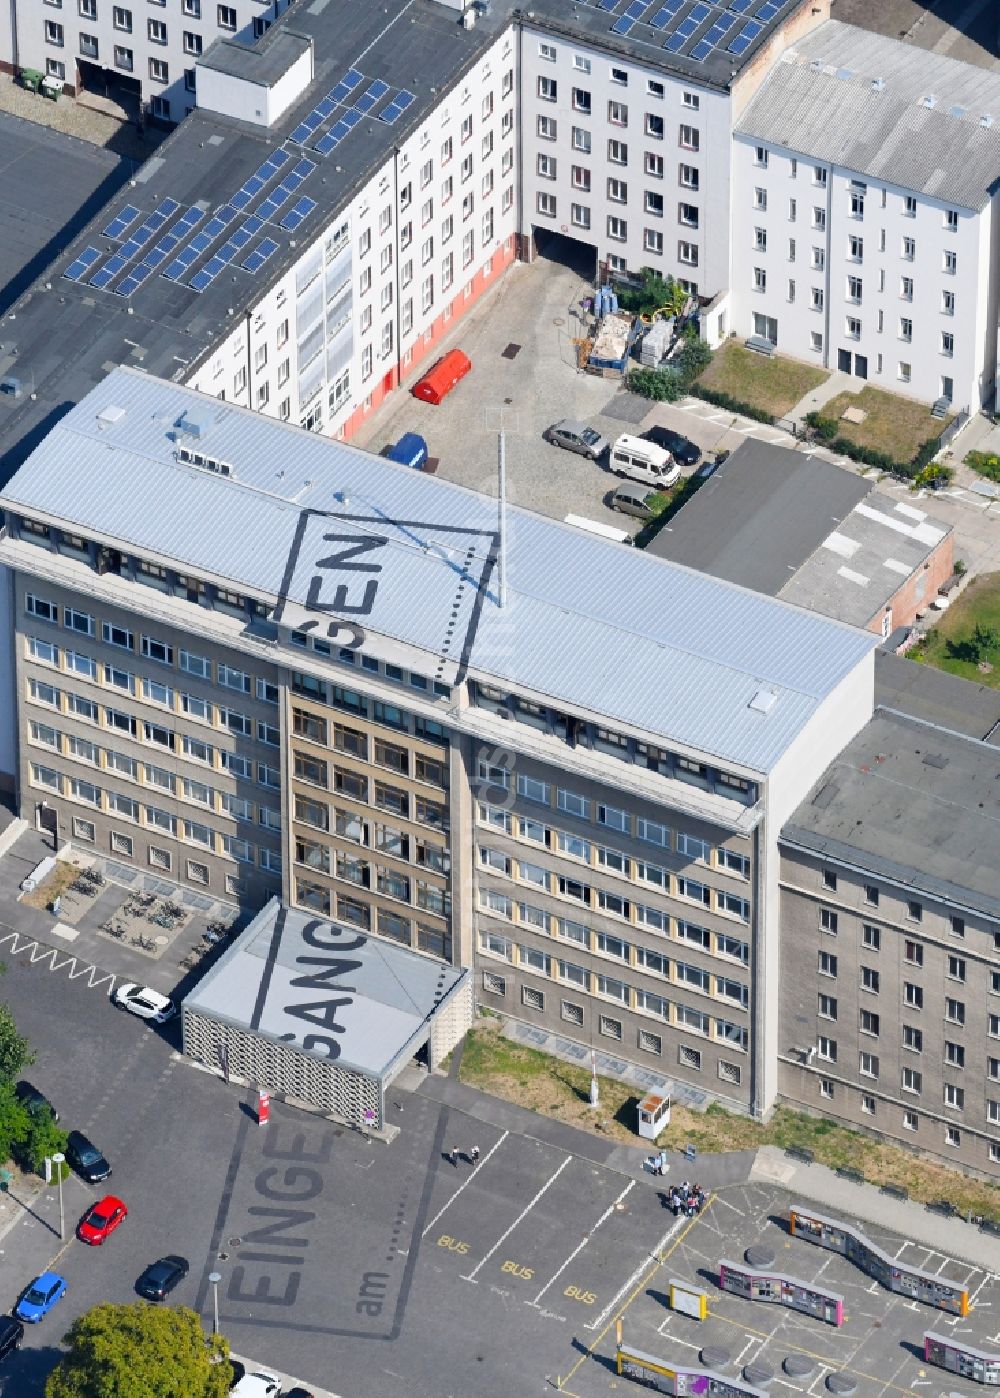 Luftbild Berlin - Gebäudekomplex der Stasi-Gedenkstätte des ehemaligen MfS Ministerium für Staatssicherheit der DDR in der Ruschestraße zwischen Normannenstraße und Frankfurter Allee in Berlin Lichtenberg